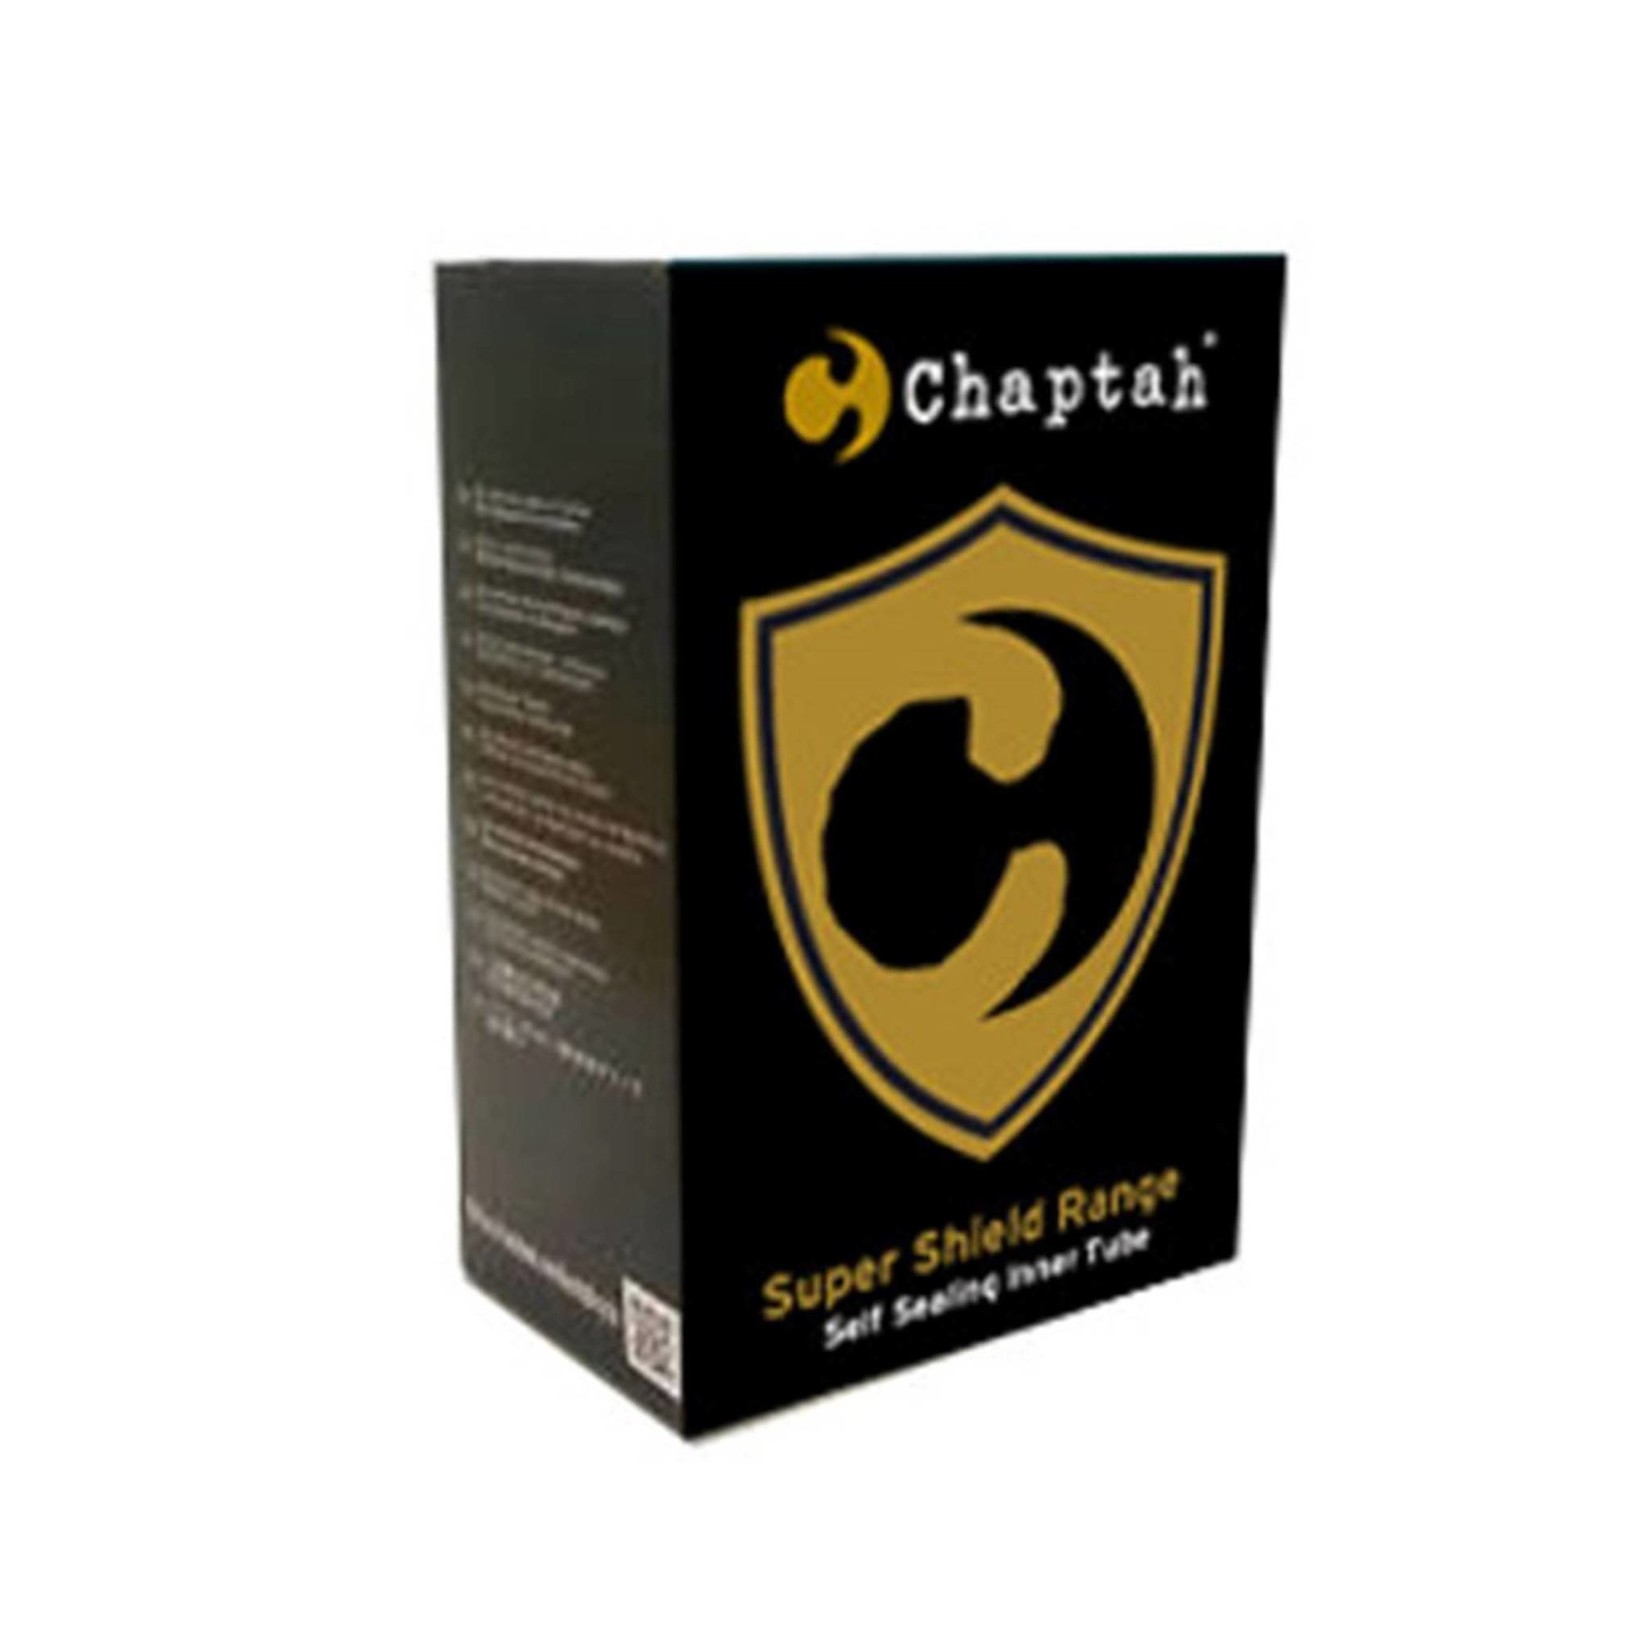 Chaptah Super Shield 26 x 1.5/2.125 Presta Tube